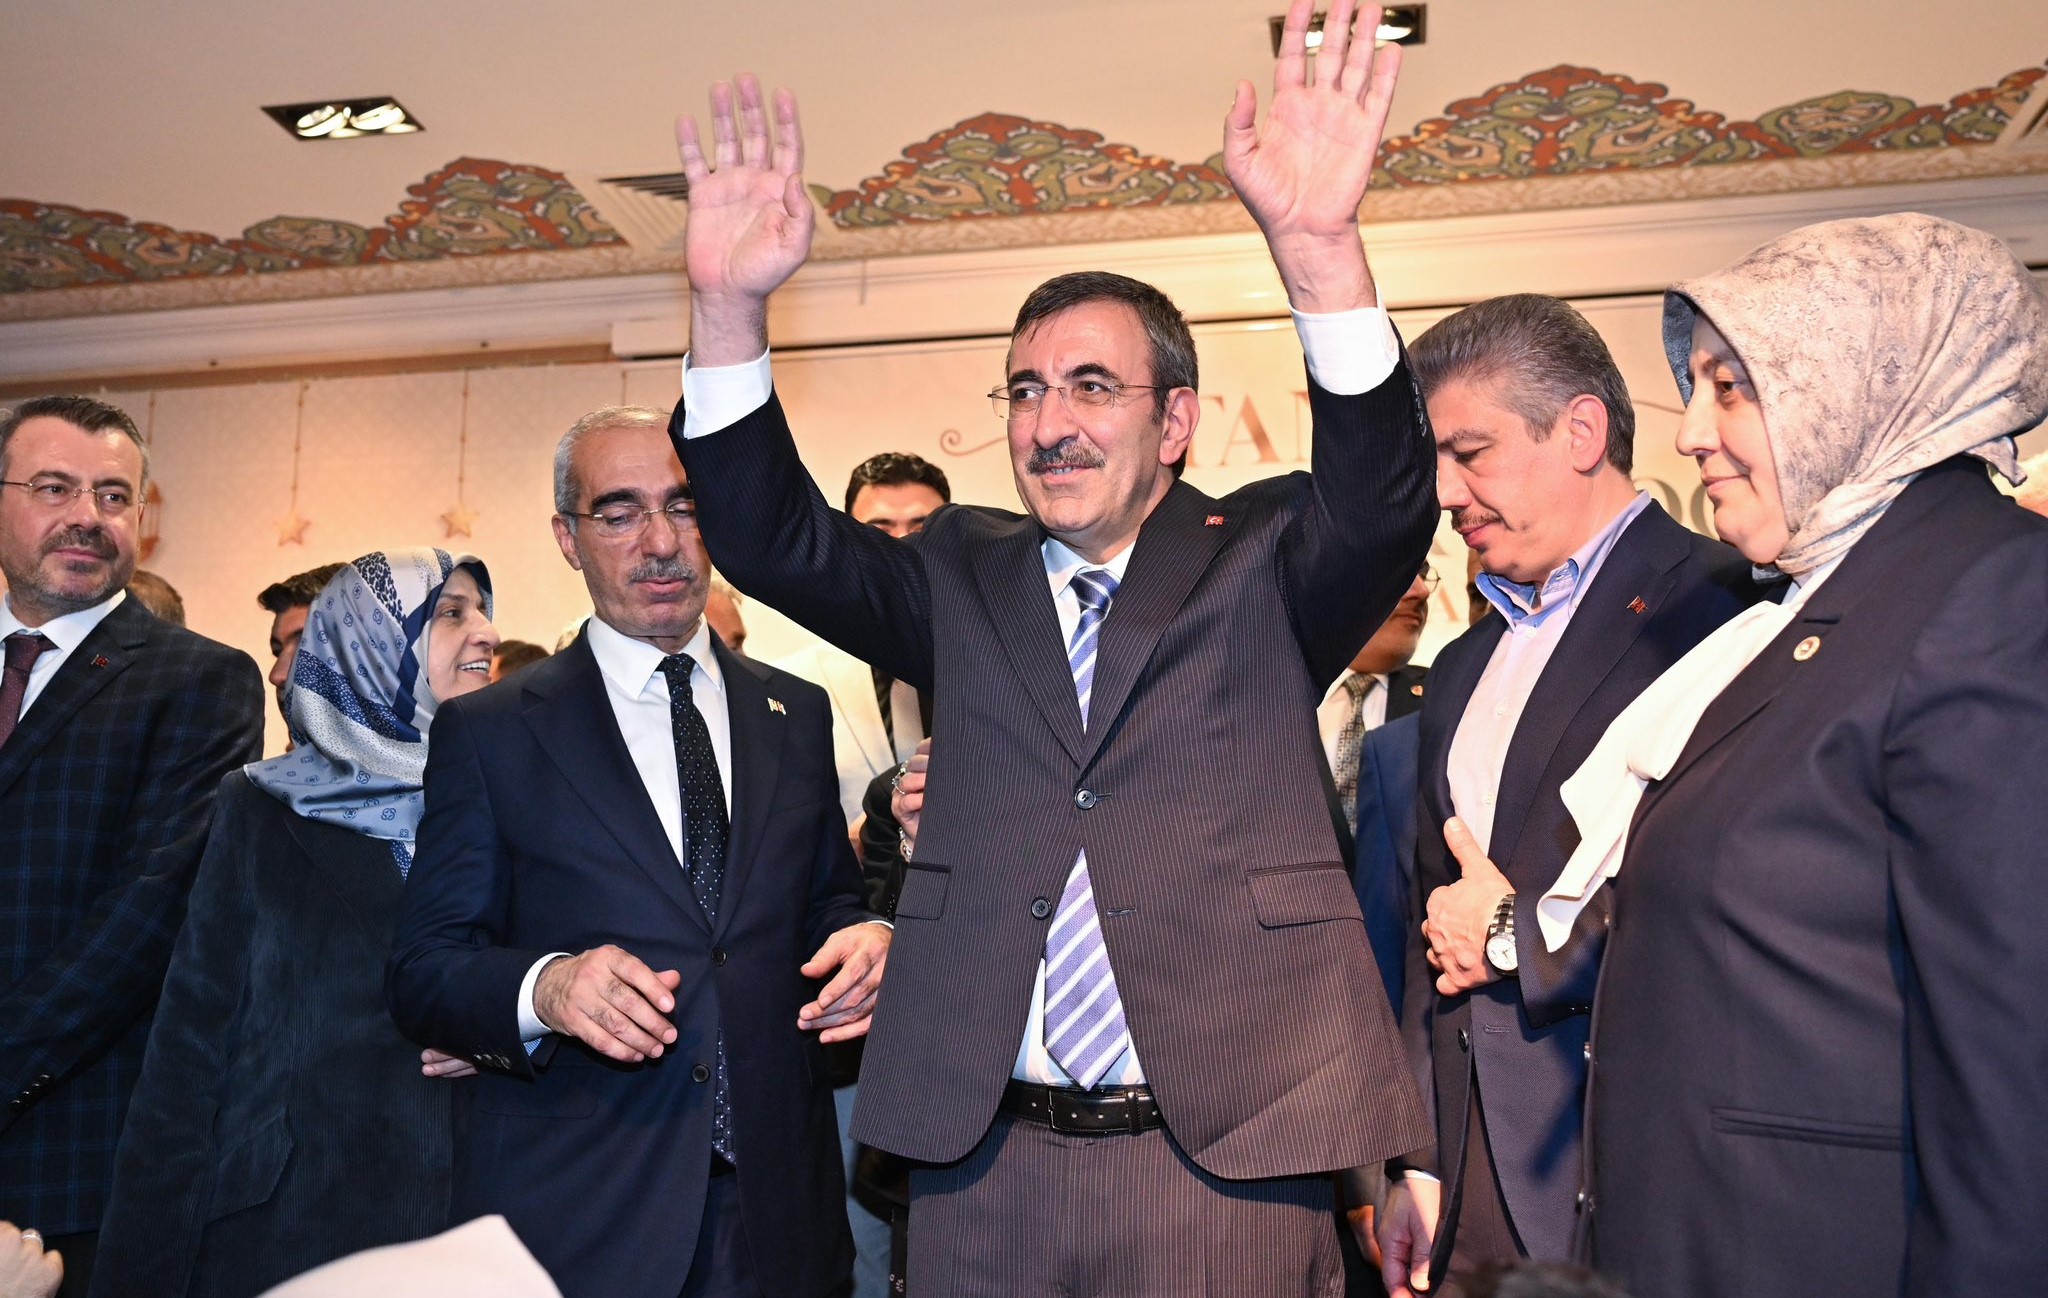 Cevdet Yılmaz Vanlıların İftar Programında Konuştu: “AK Parti, Kürtlerin partisidir”